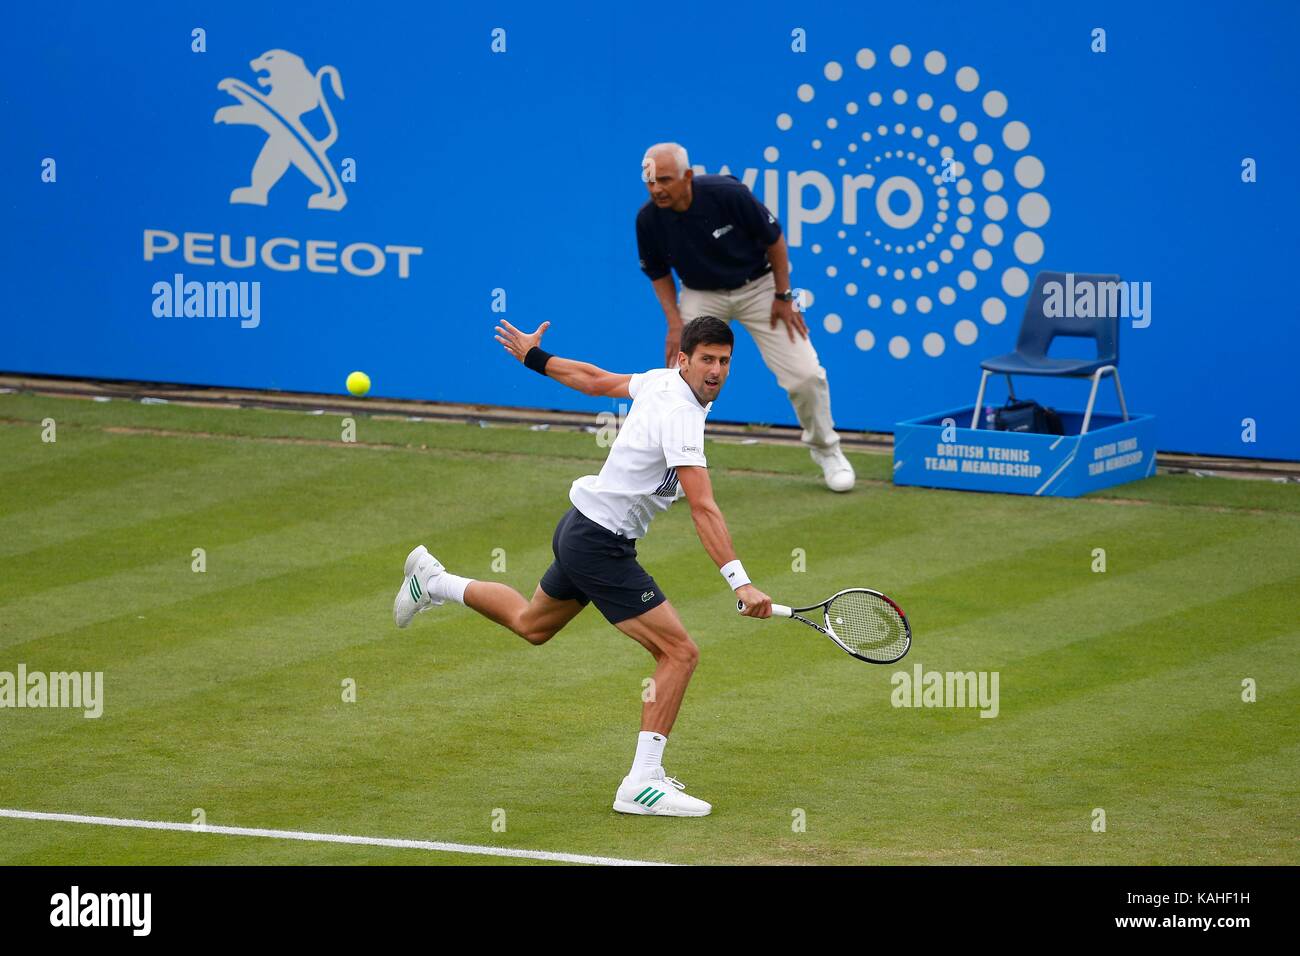 Le Serbe Novak Djokovic en action contre Vasek Pospisil journée Canadienne sur cinq de l'Aegon International au Devonshire Park, Eastbourne. 27 Juin 2017 Banque D'Images